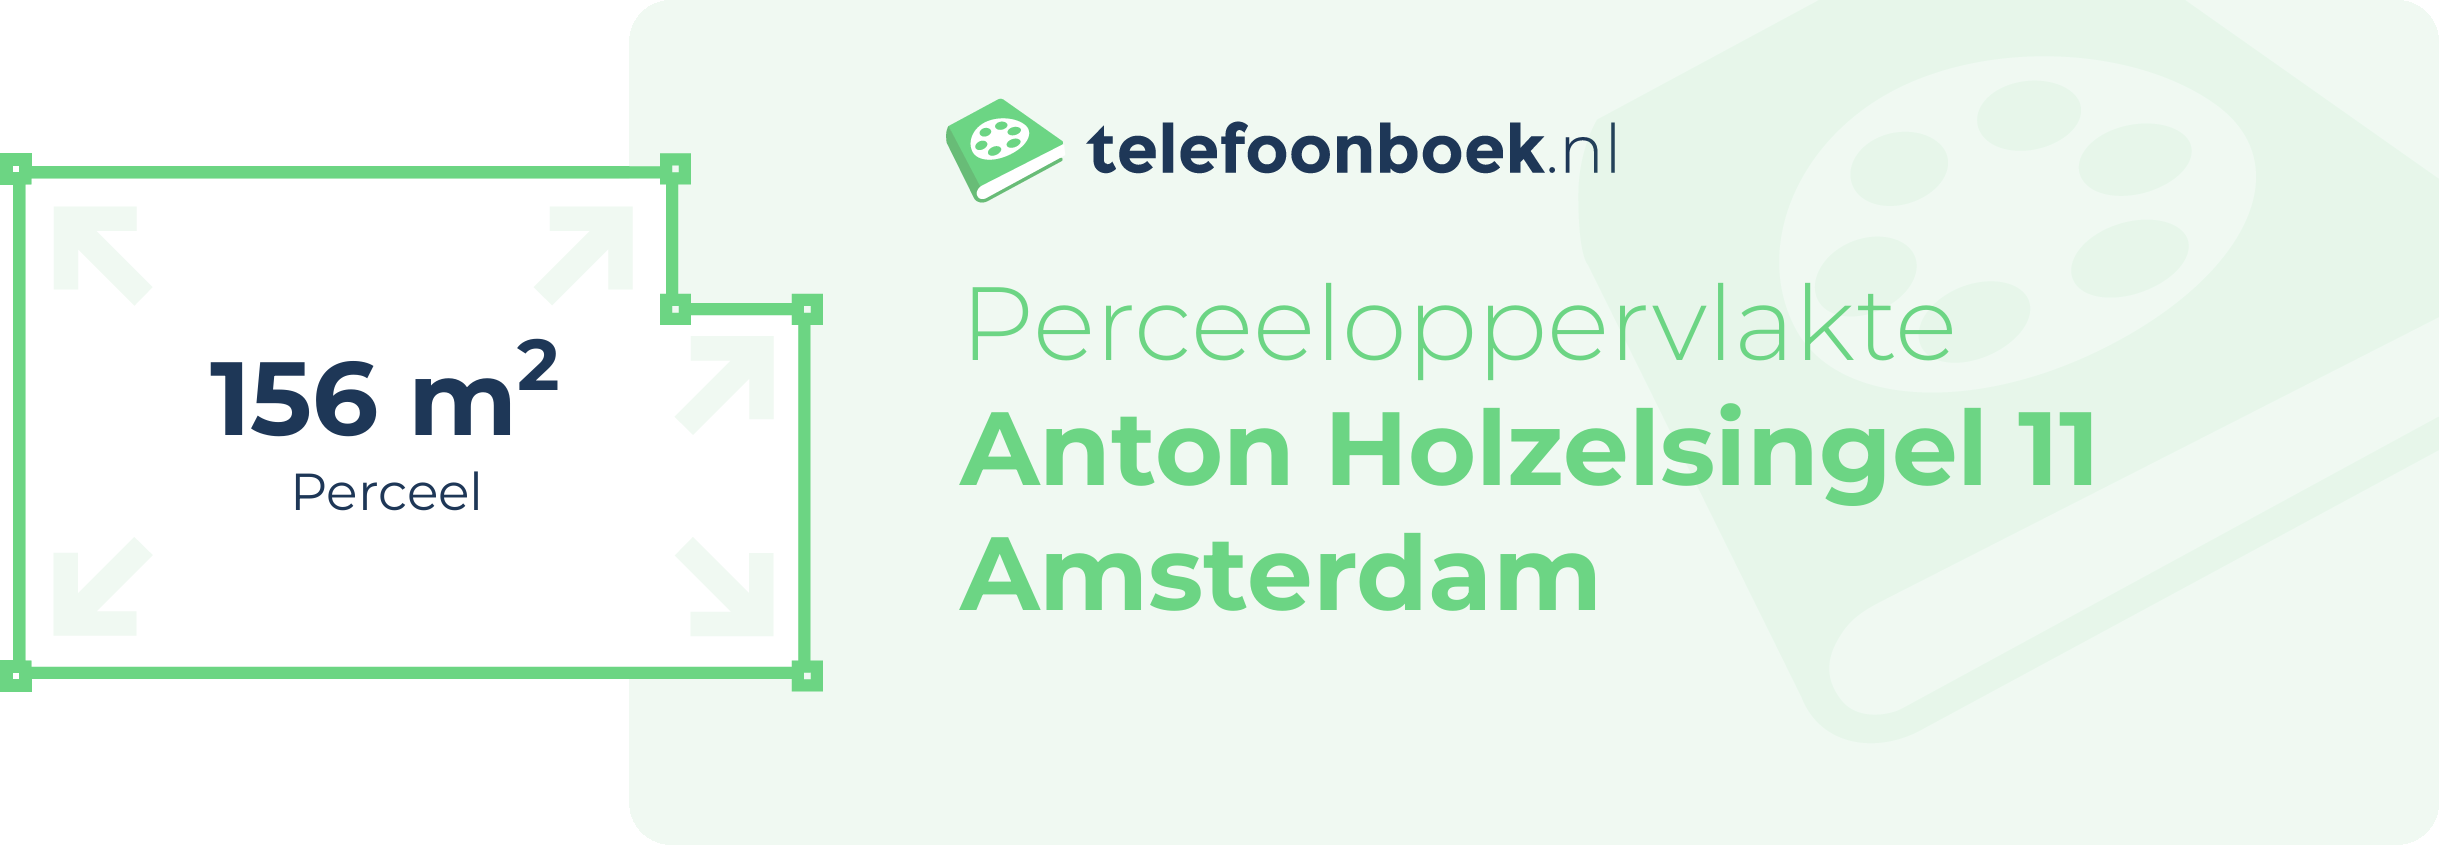 Perceeloppervlakte Anton Holzelsingel 11 Amsterdam